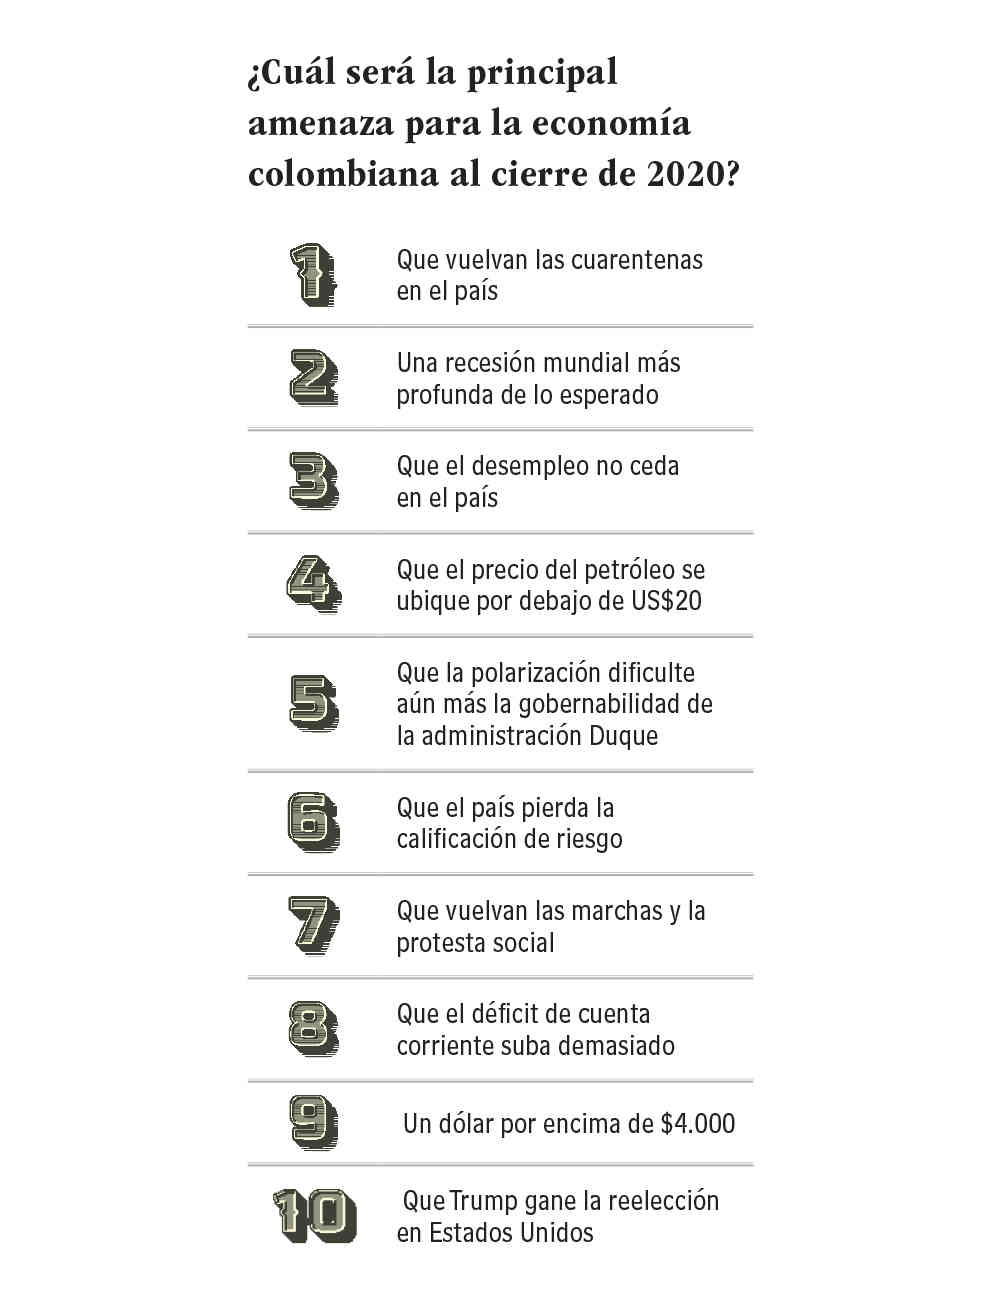 ¿Cuál será la principal amenaza para la economía colombiana al cierre de 2020?